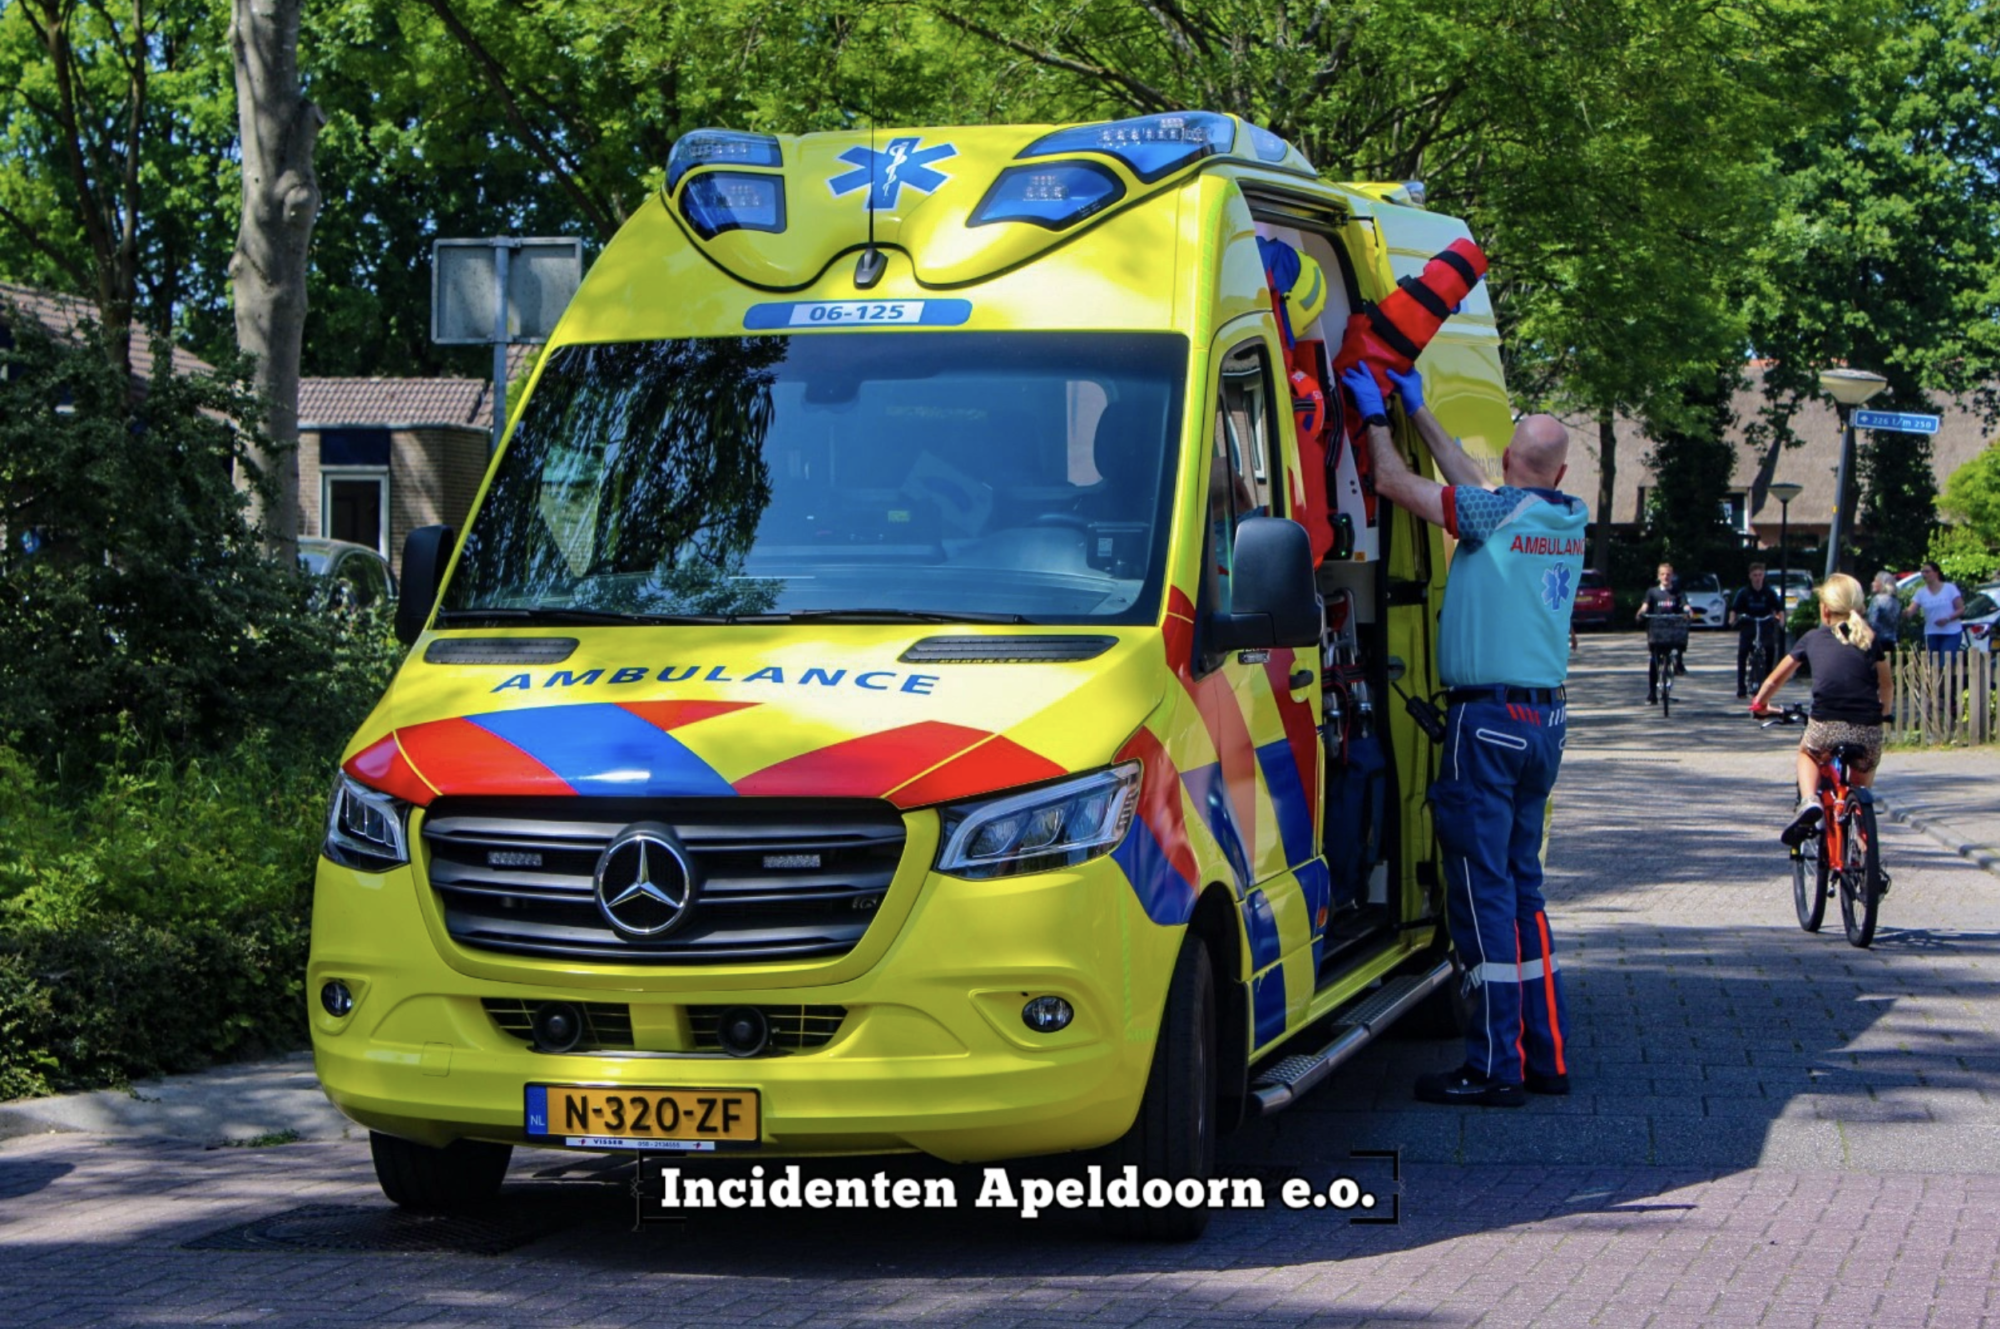 Vrouw gewond bij valpartij in Apeldoorn